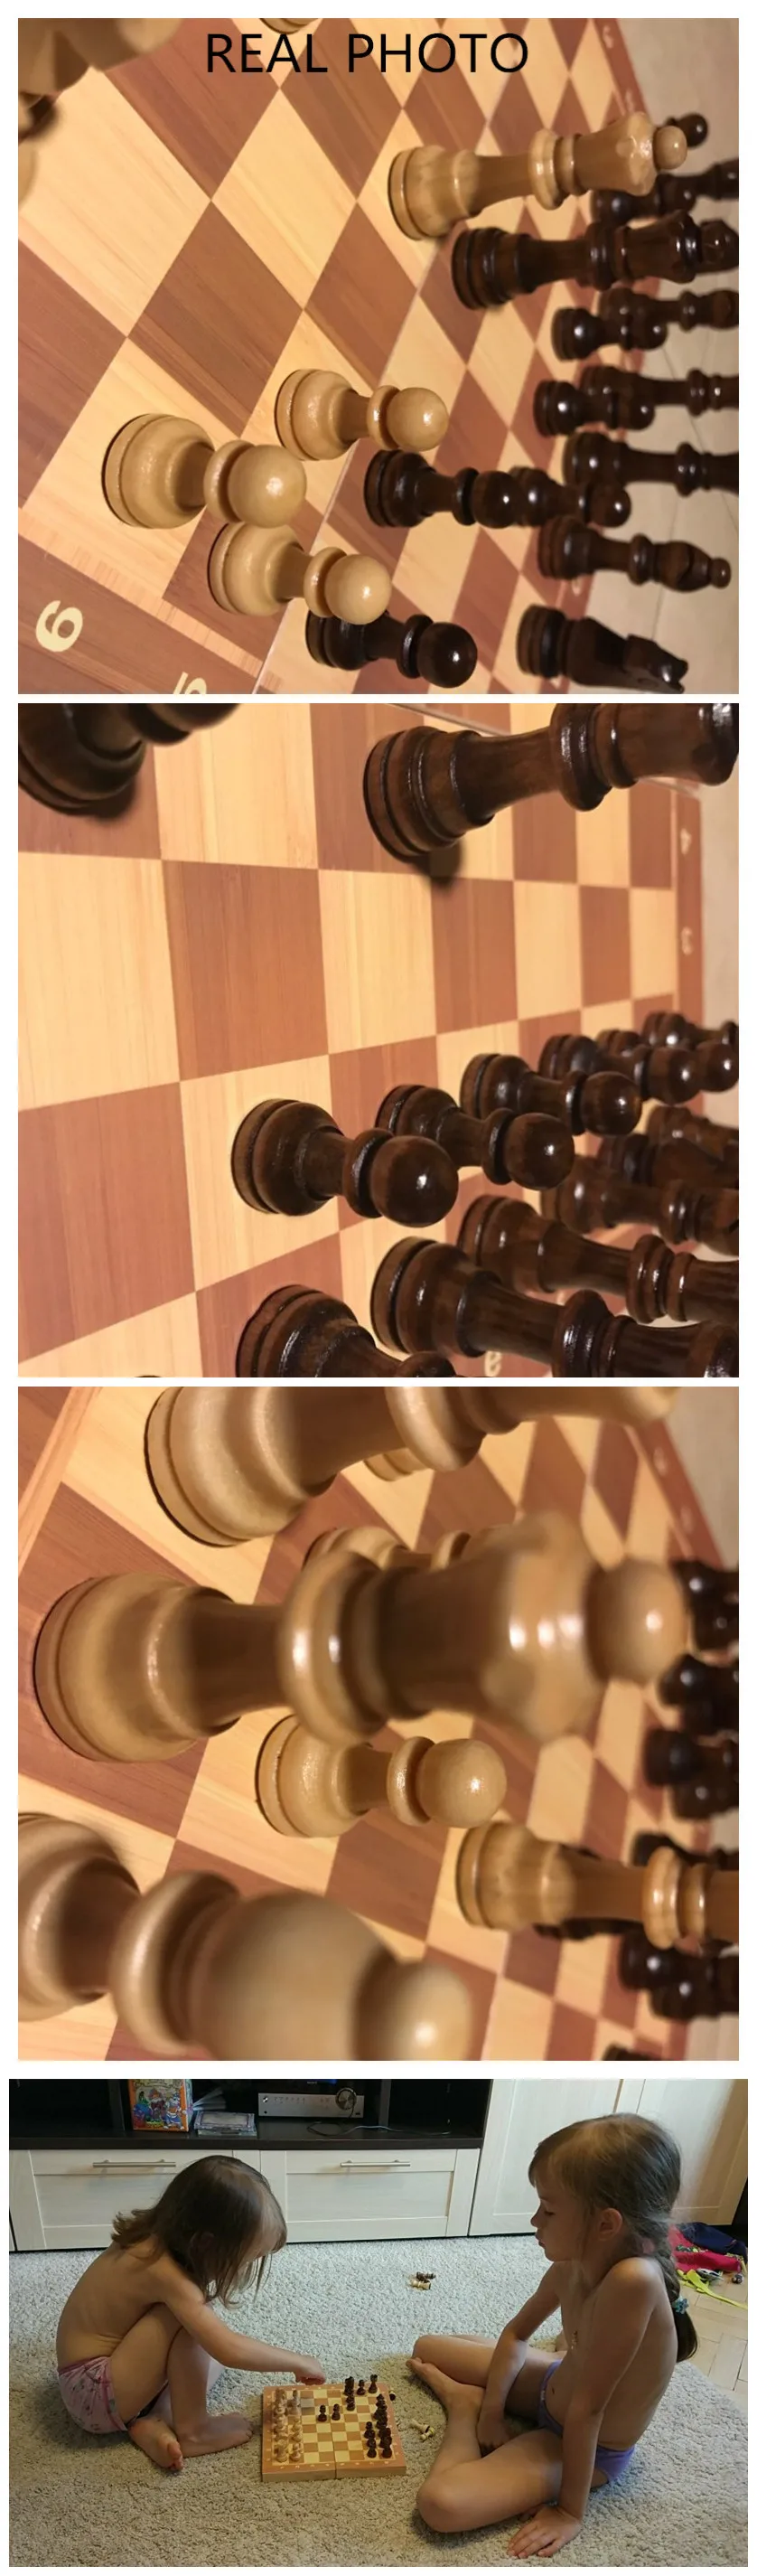 Высокое качество 39 см X 39 см классический деревянный Шахматный набор настольная игра Складная магнитная складная доска упаковка деревянные шахматы